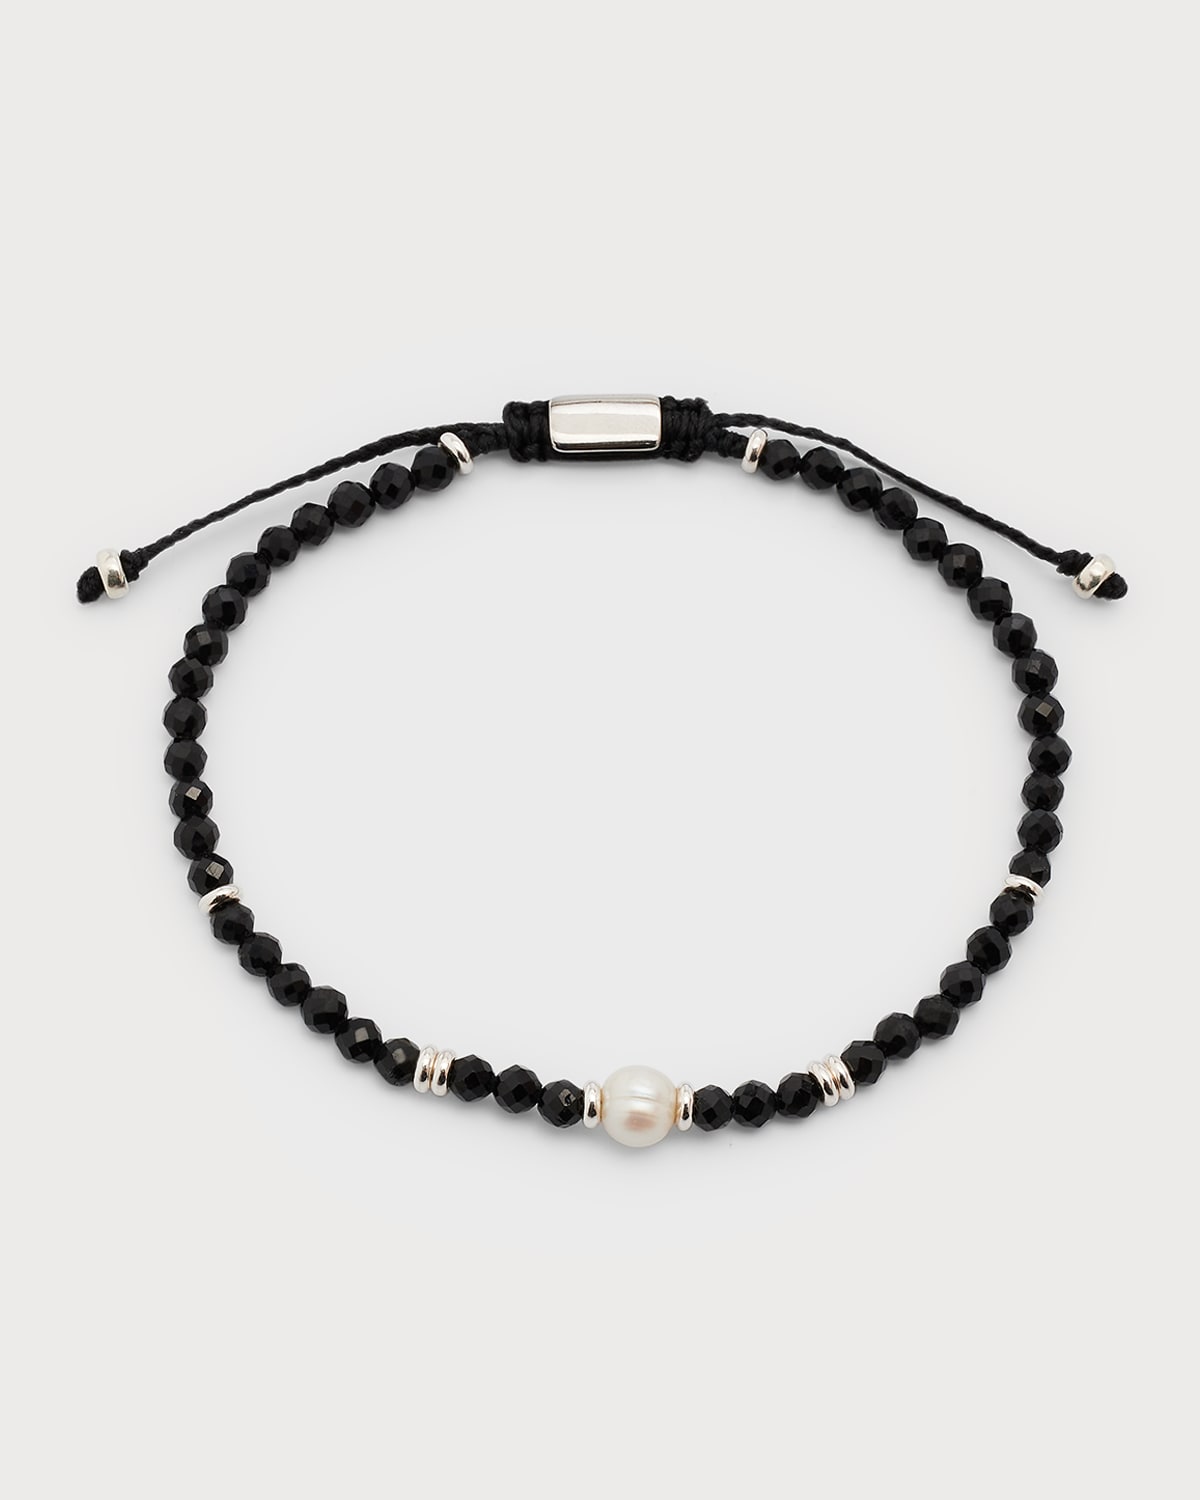 Men's Black Onyx Beaded Bracelet with Freshwater Pearl Center